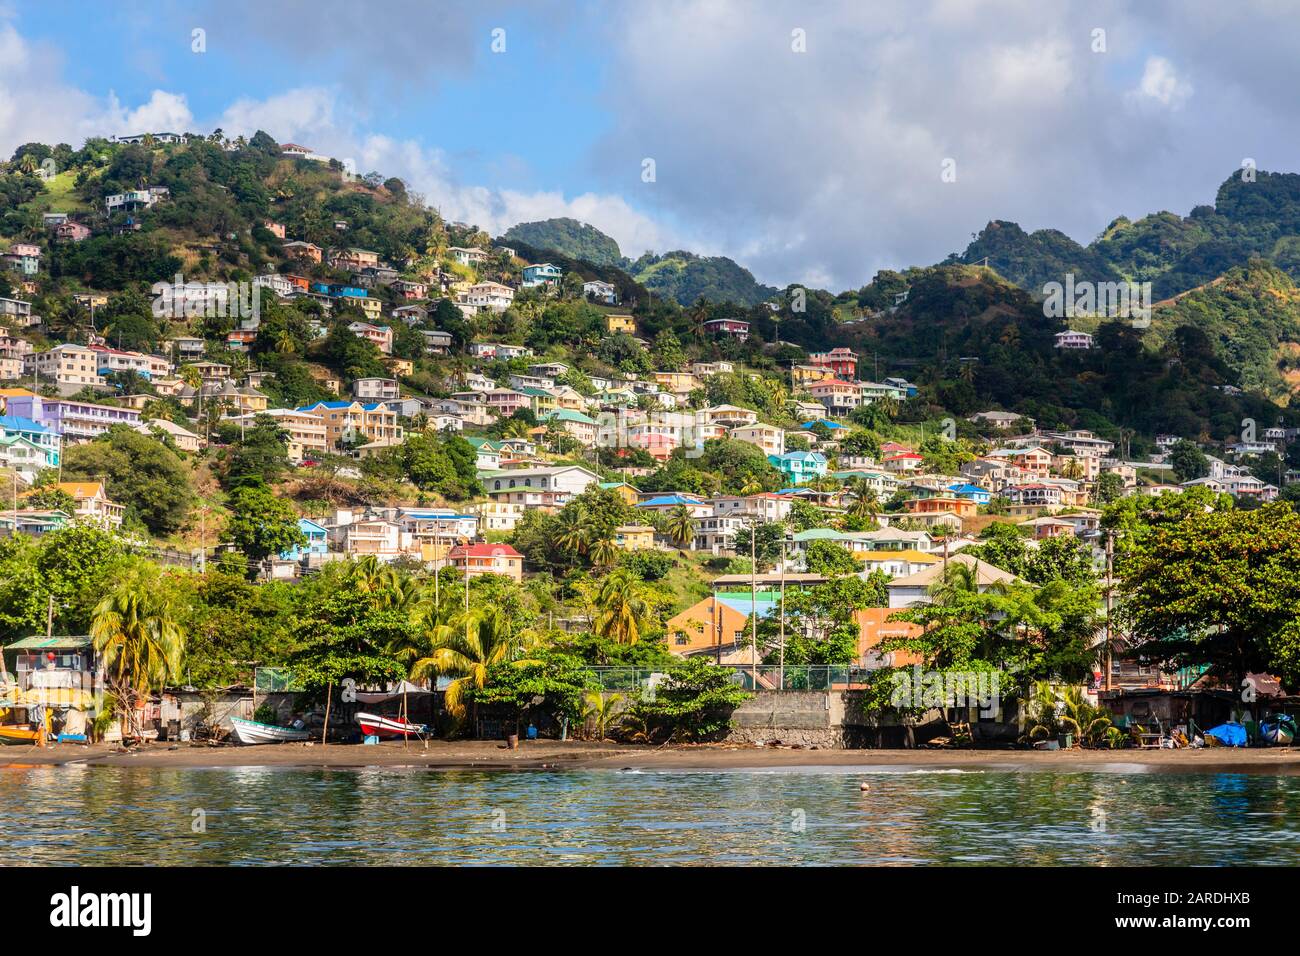 Côte pleine de bateaux avec beaucoup de maisons vivantes sur la colline, Kingstown, Saint Vincent et les Grenadines Banque D'Images